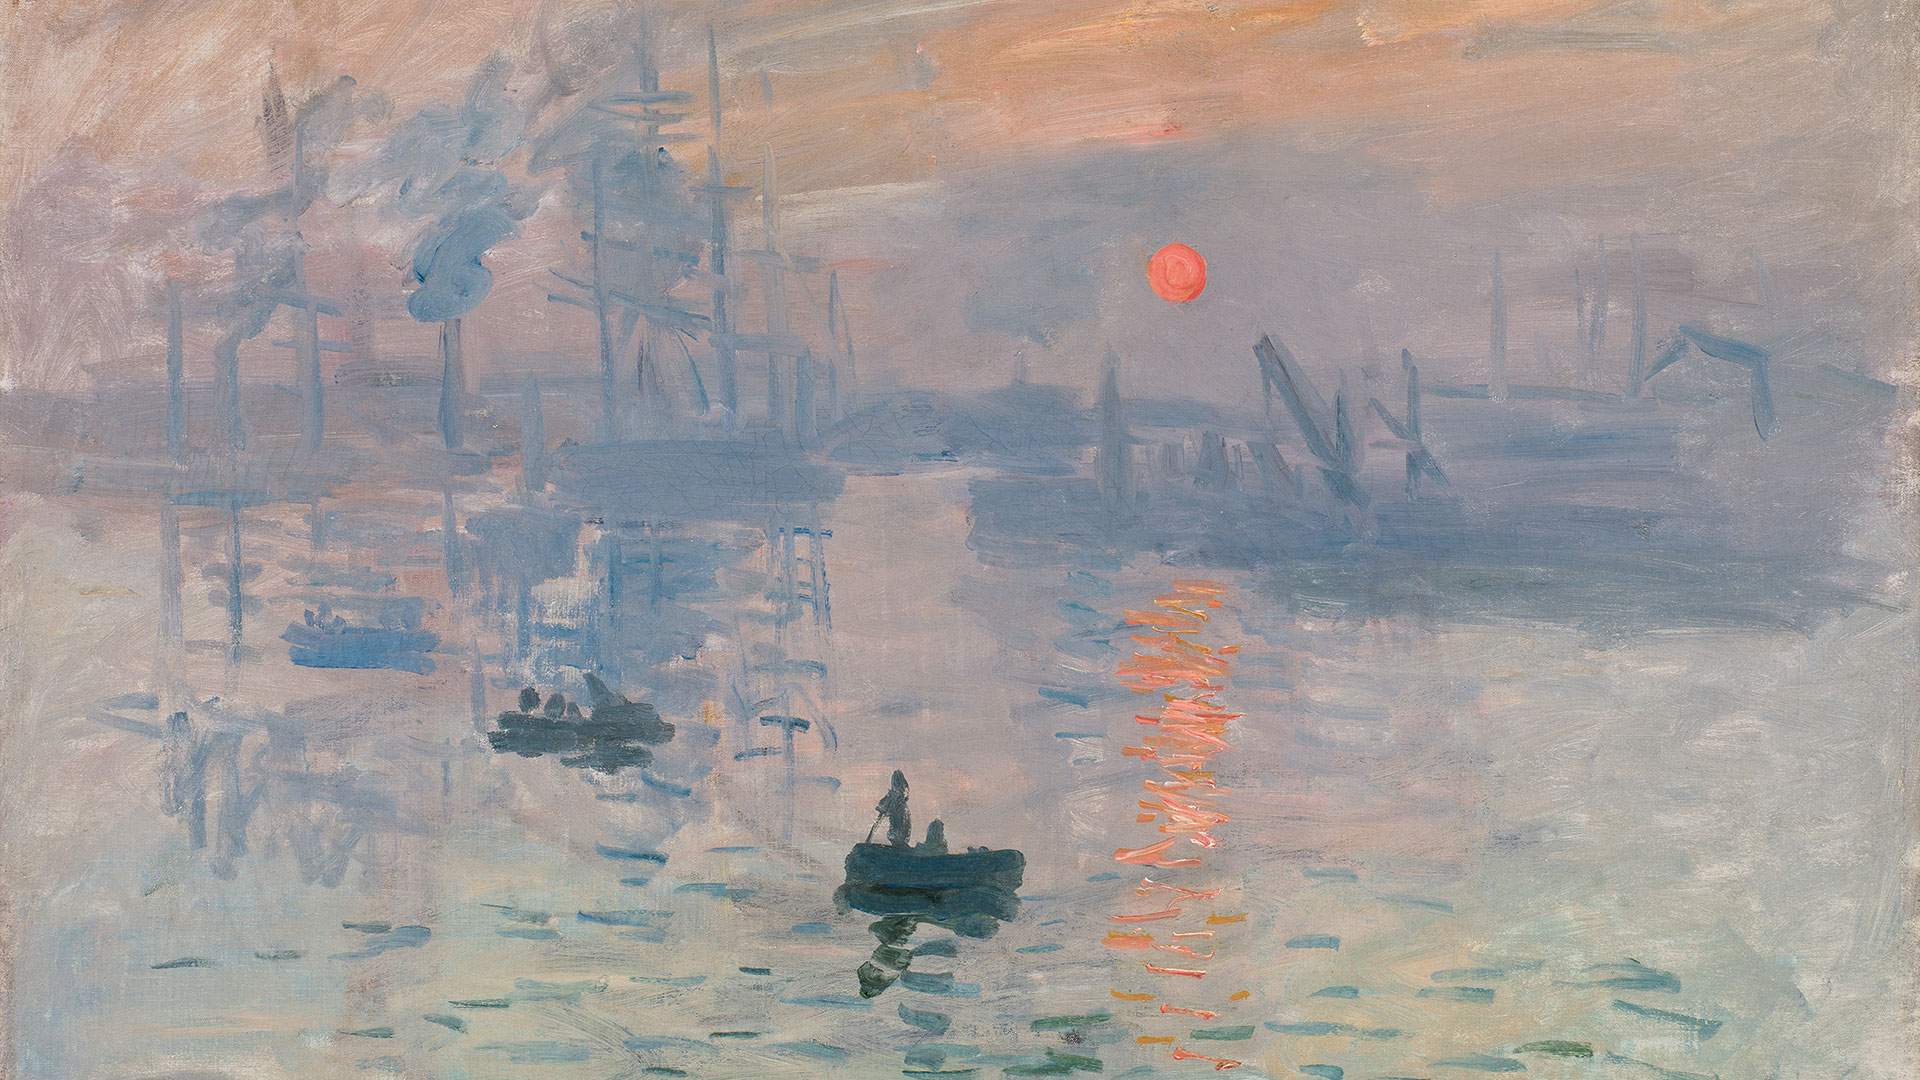 Monet: Impression Sunrise